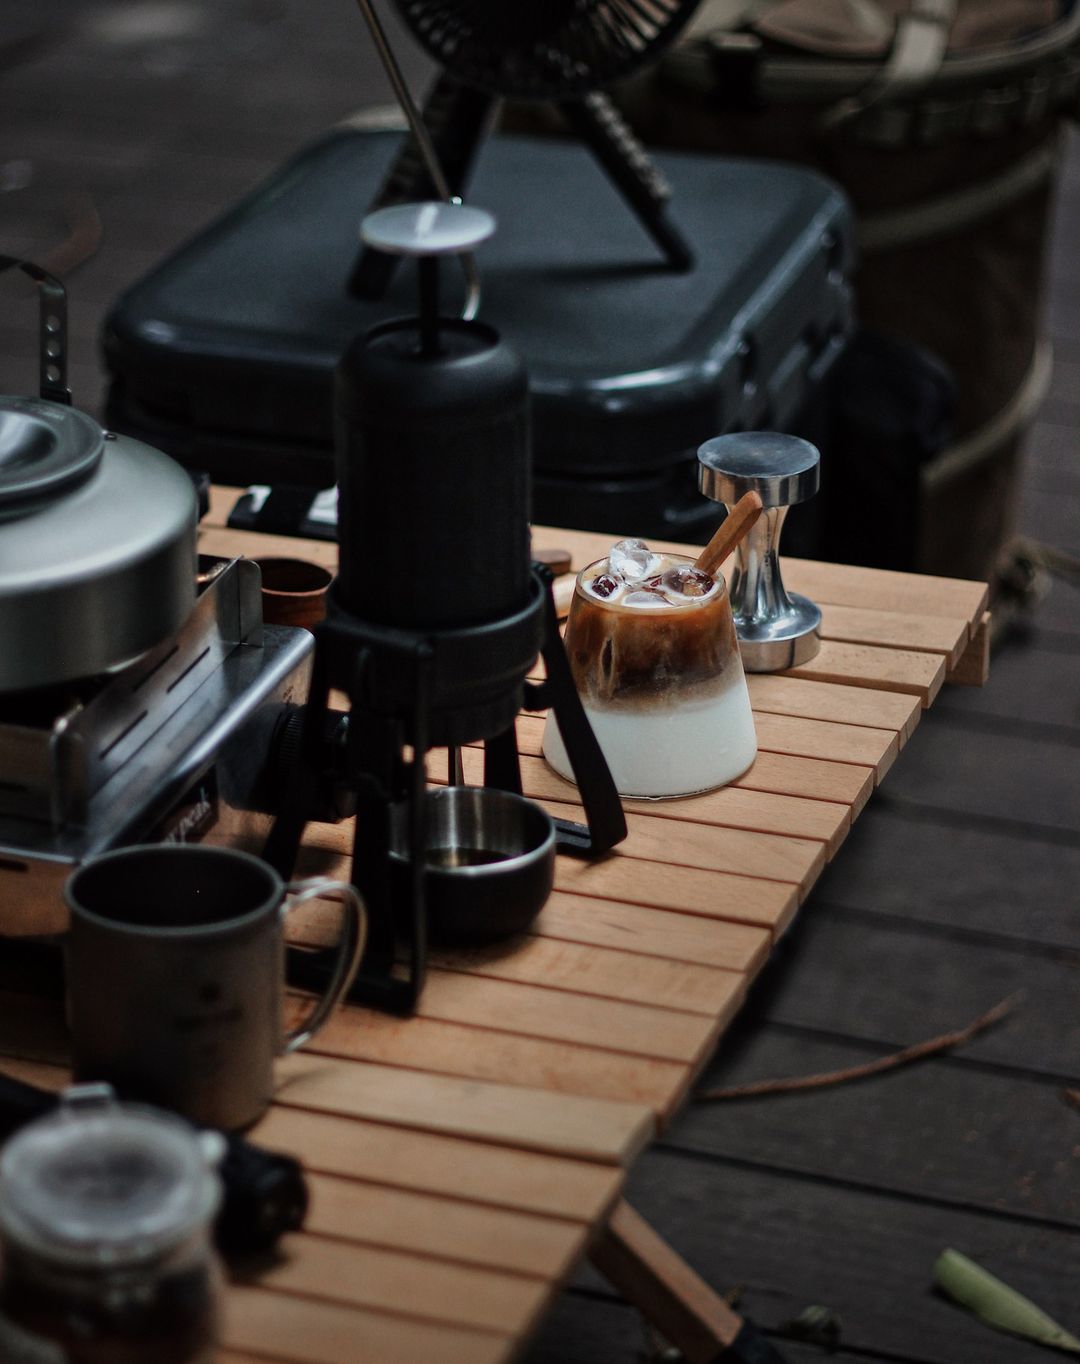 Pod-Friendly Mobile Coffee Makers : Staresso portable espresso maker